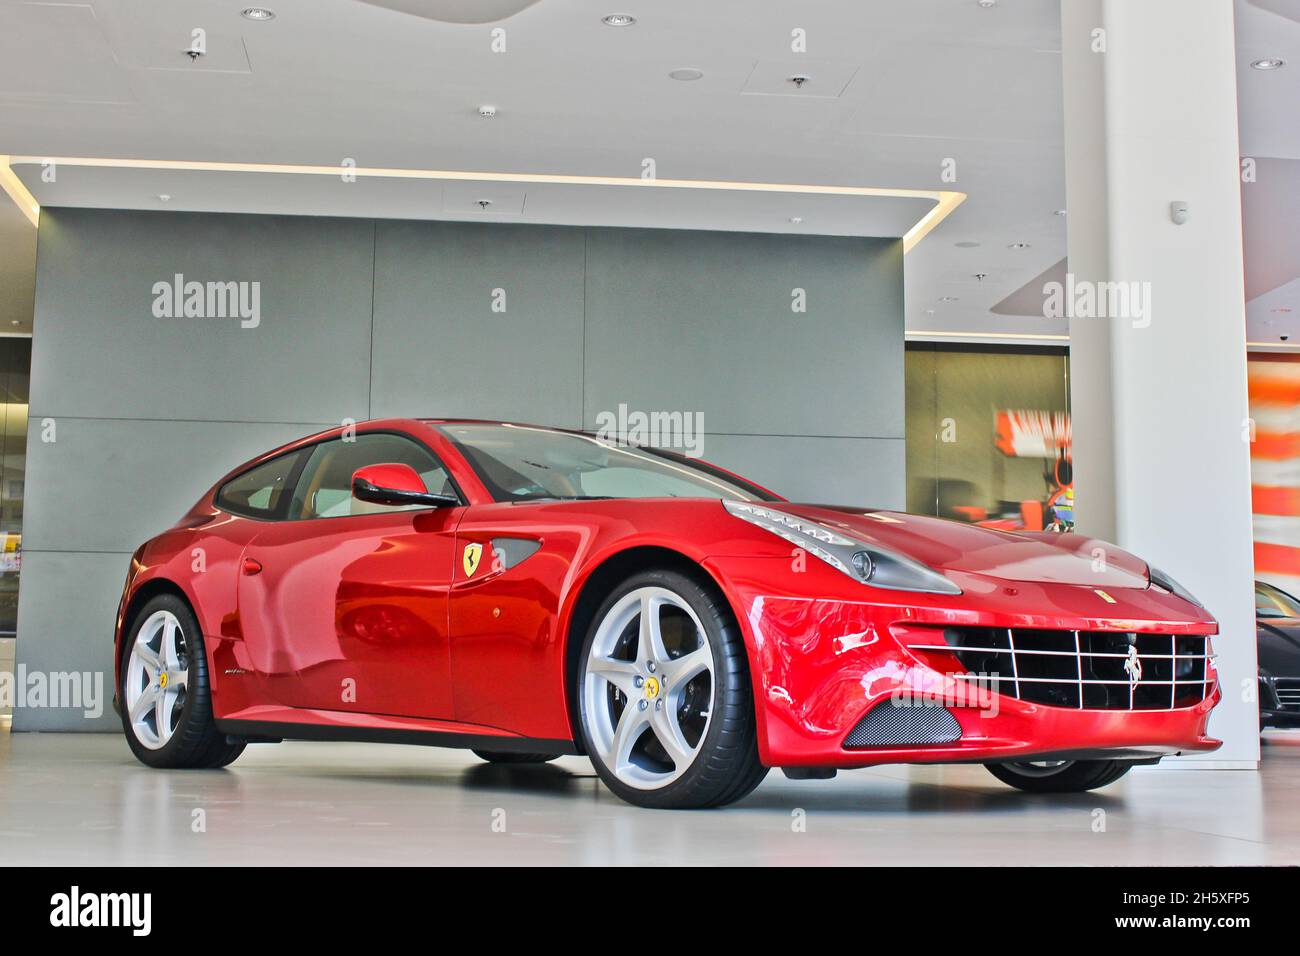 Kiev, Ukraine - August 20, 2011: Red Italian supercar Ferrari FF. Car for sale, new car, for advertising Stock Photo